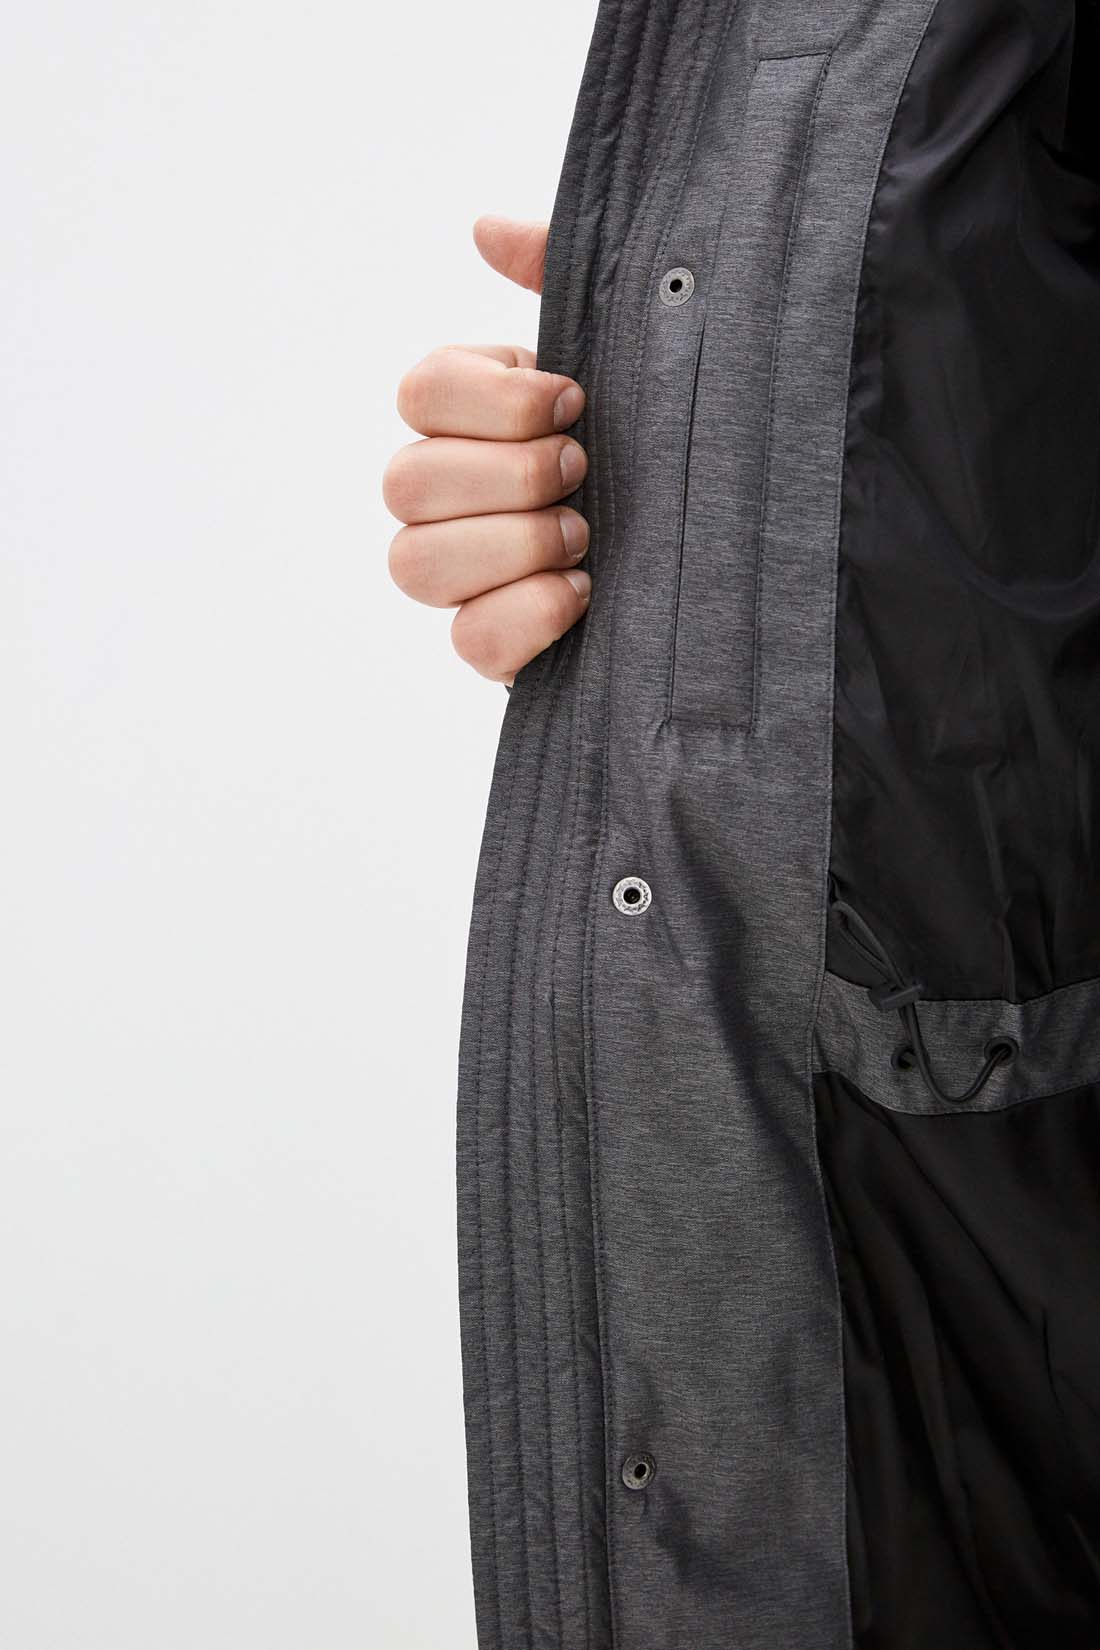 Куртка (Эко пух) (арт. baon B541507), размер S, цвет marengo melange#ebeeed Куртка (Эко пух) (арт. baon B541507) - фото 4